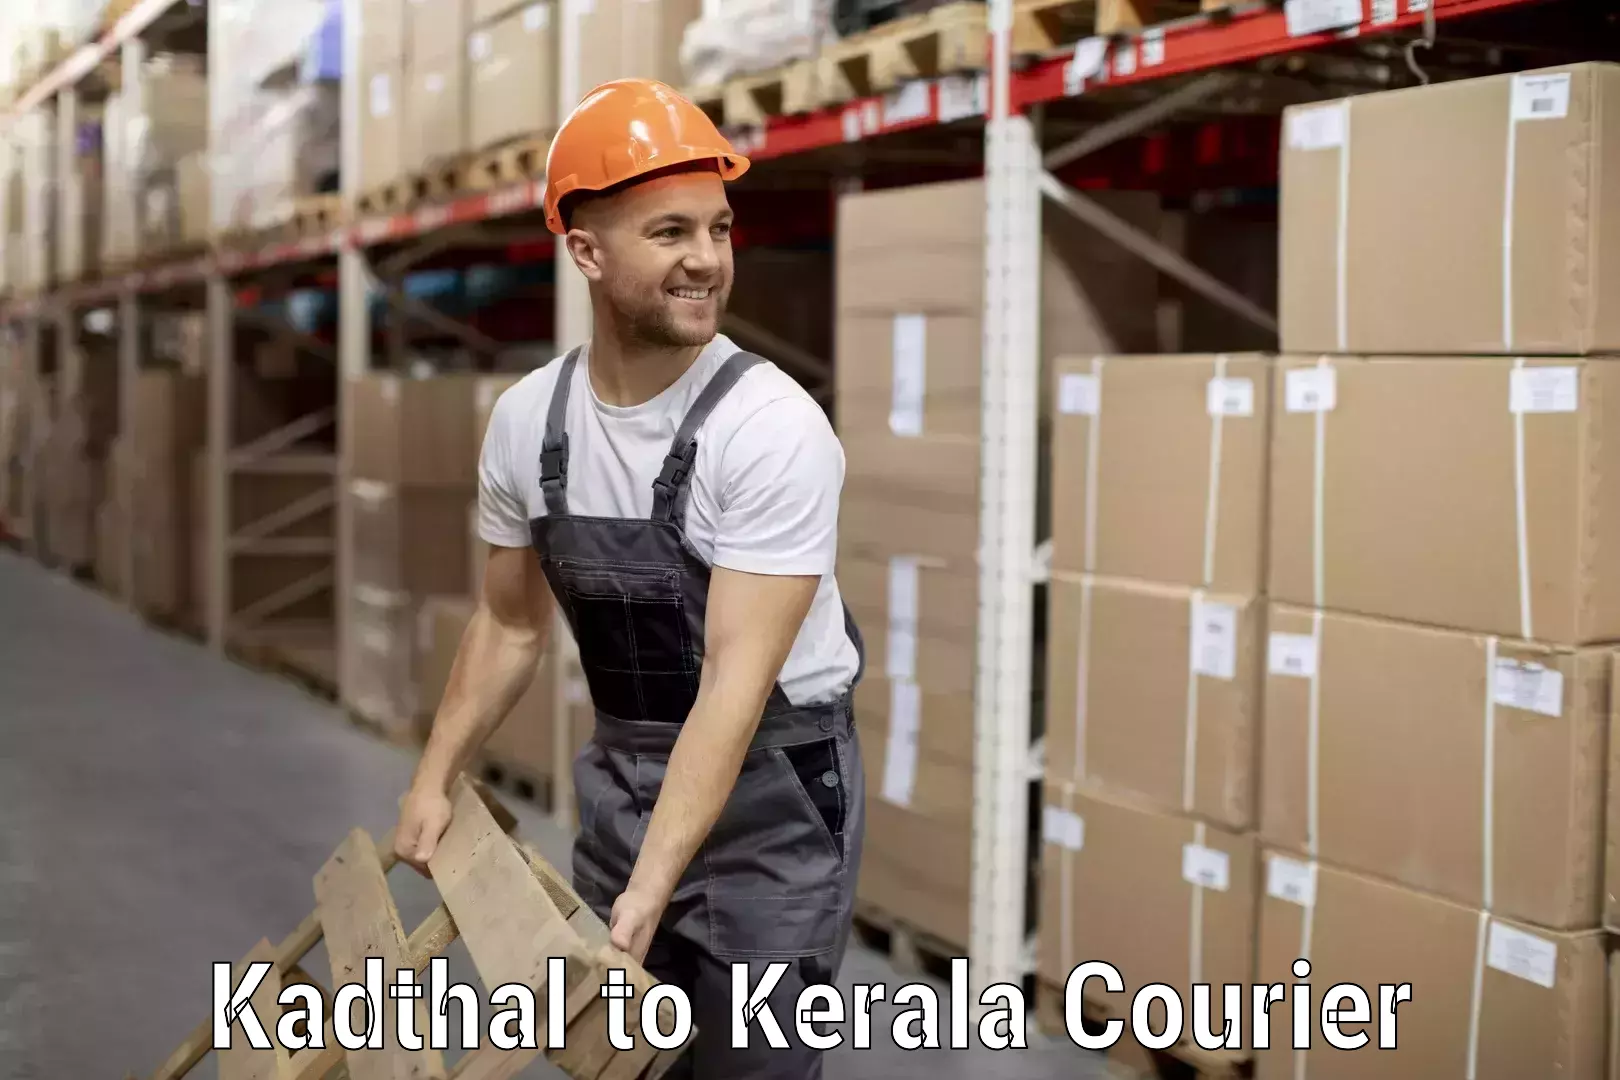 Baggage shipping service Kadthal to Kiliyanthara